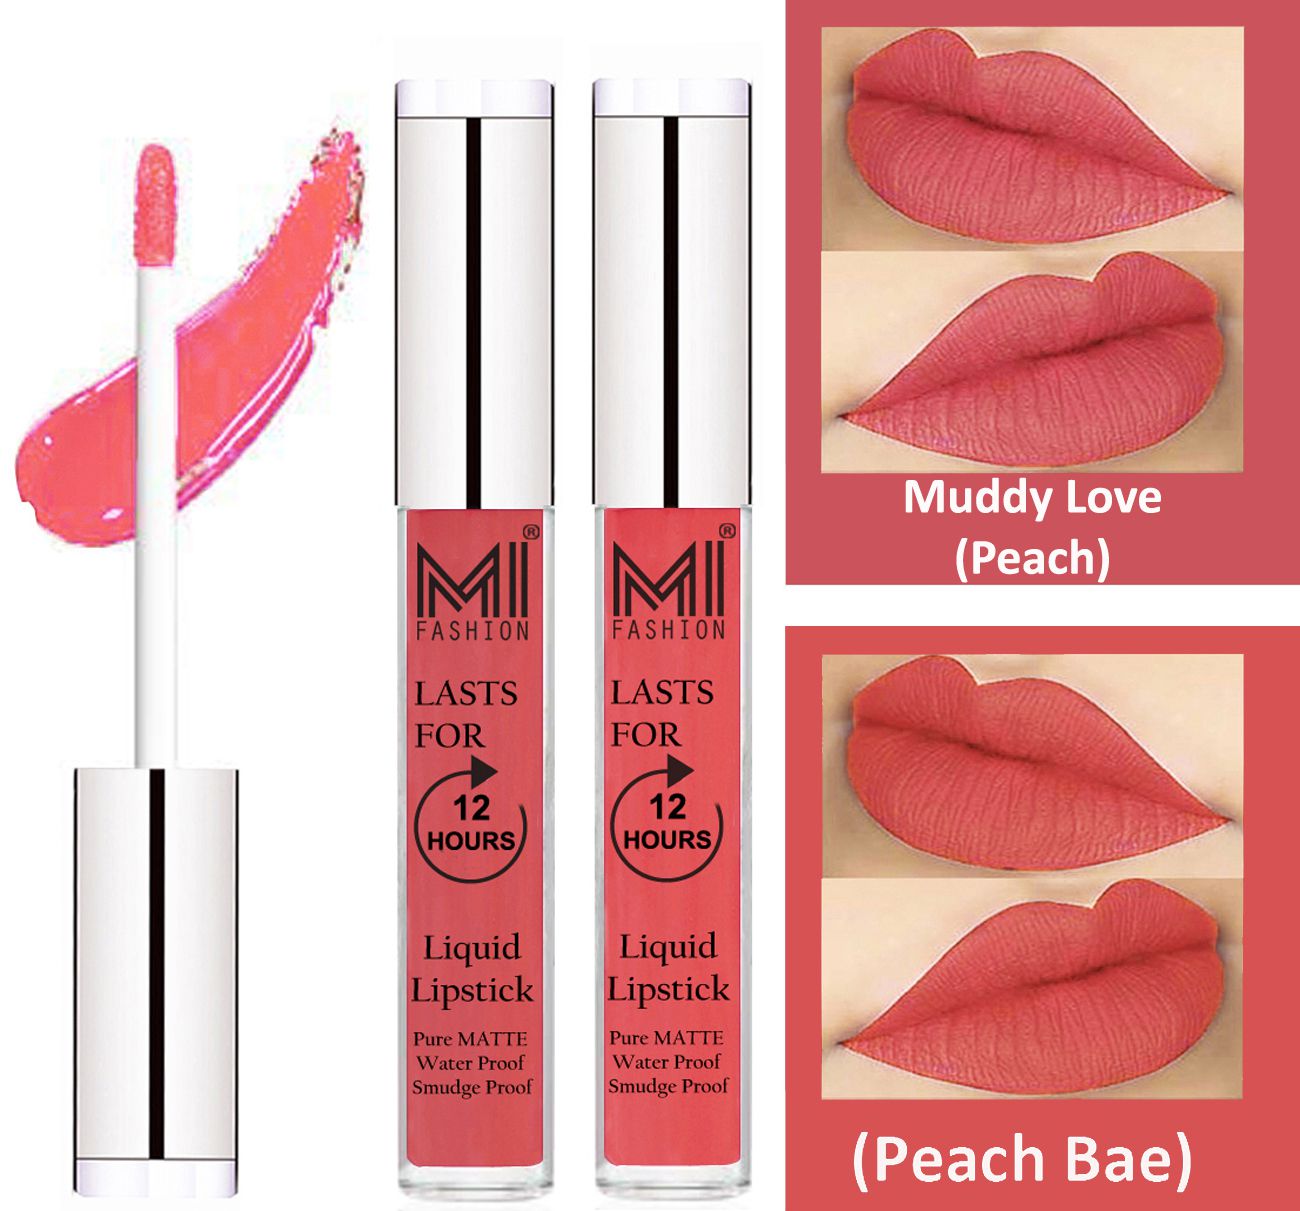     			MI FASHION Liquid Lipstick Peach,Peach Bae Pack of 2